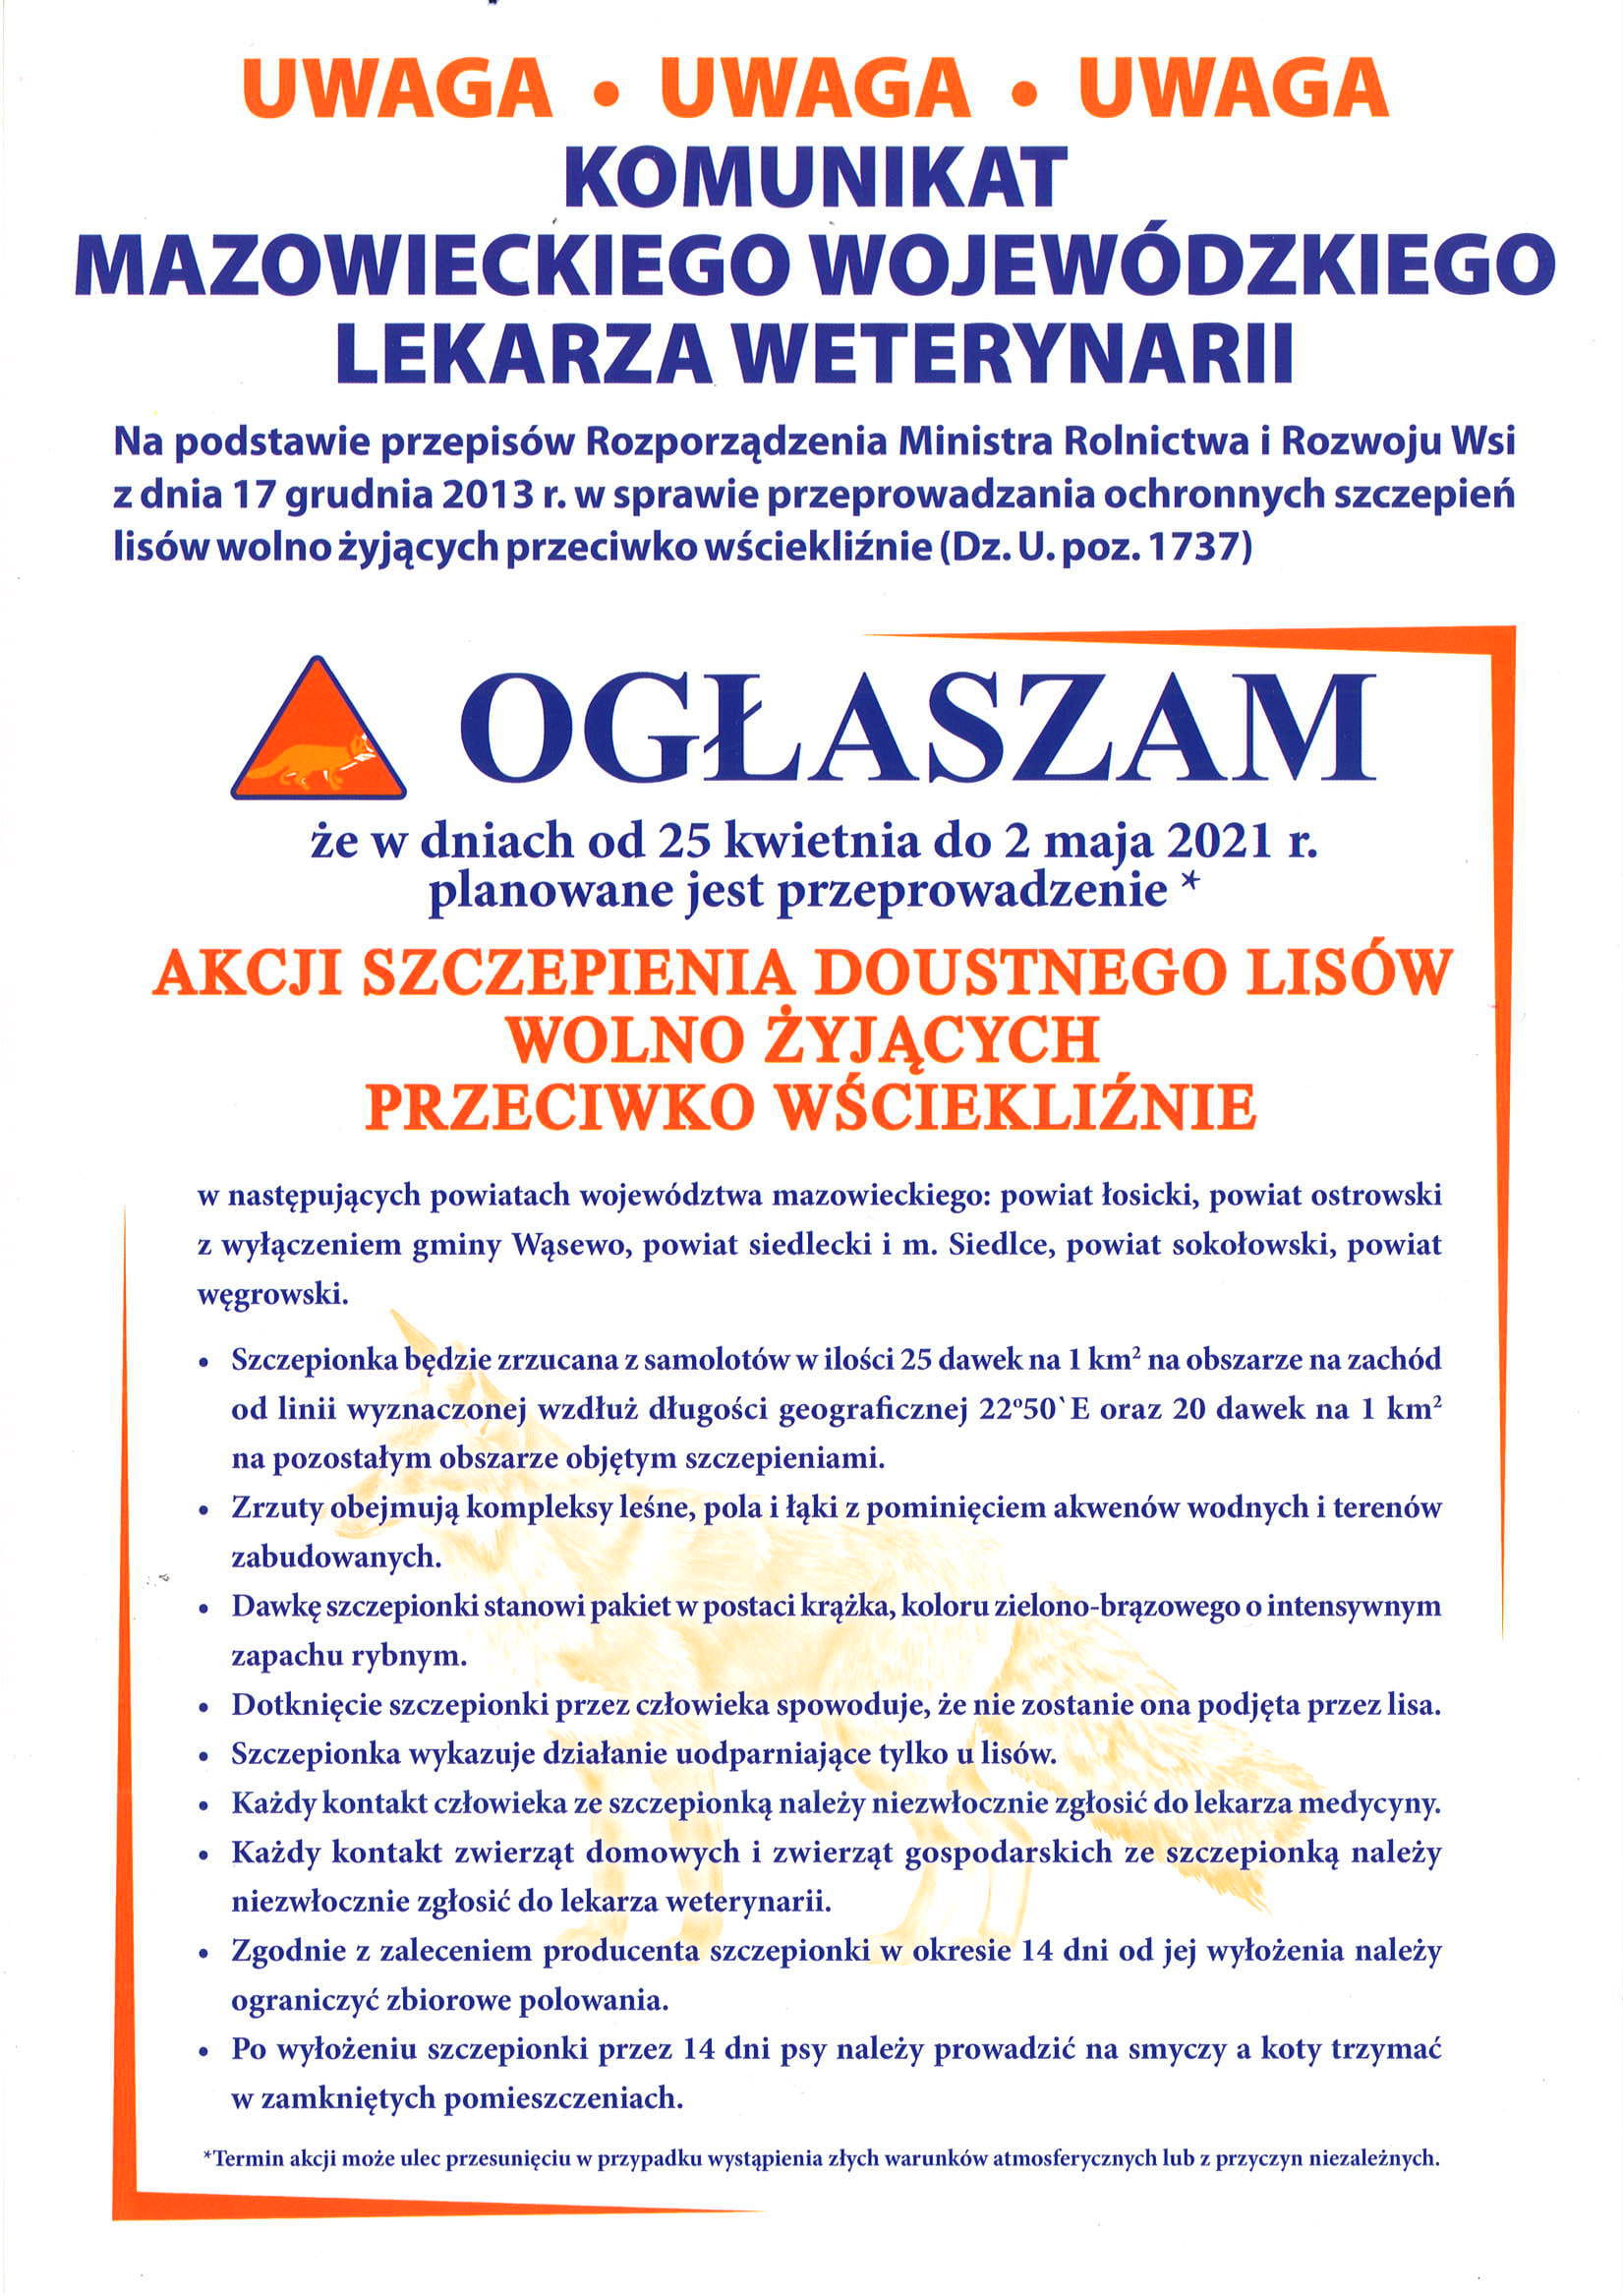 Plakat informujący o akcji szczepienia doustnego lisów w dniach od 25 kwietnia do 2 maja 2021r.